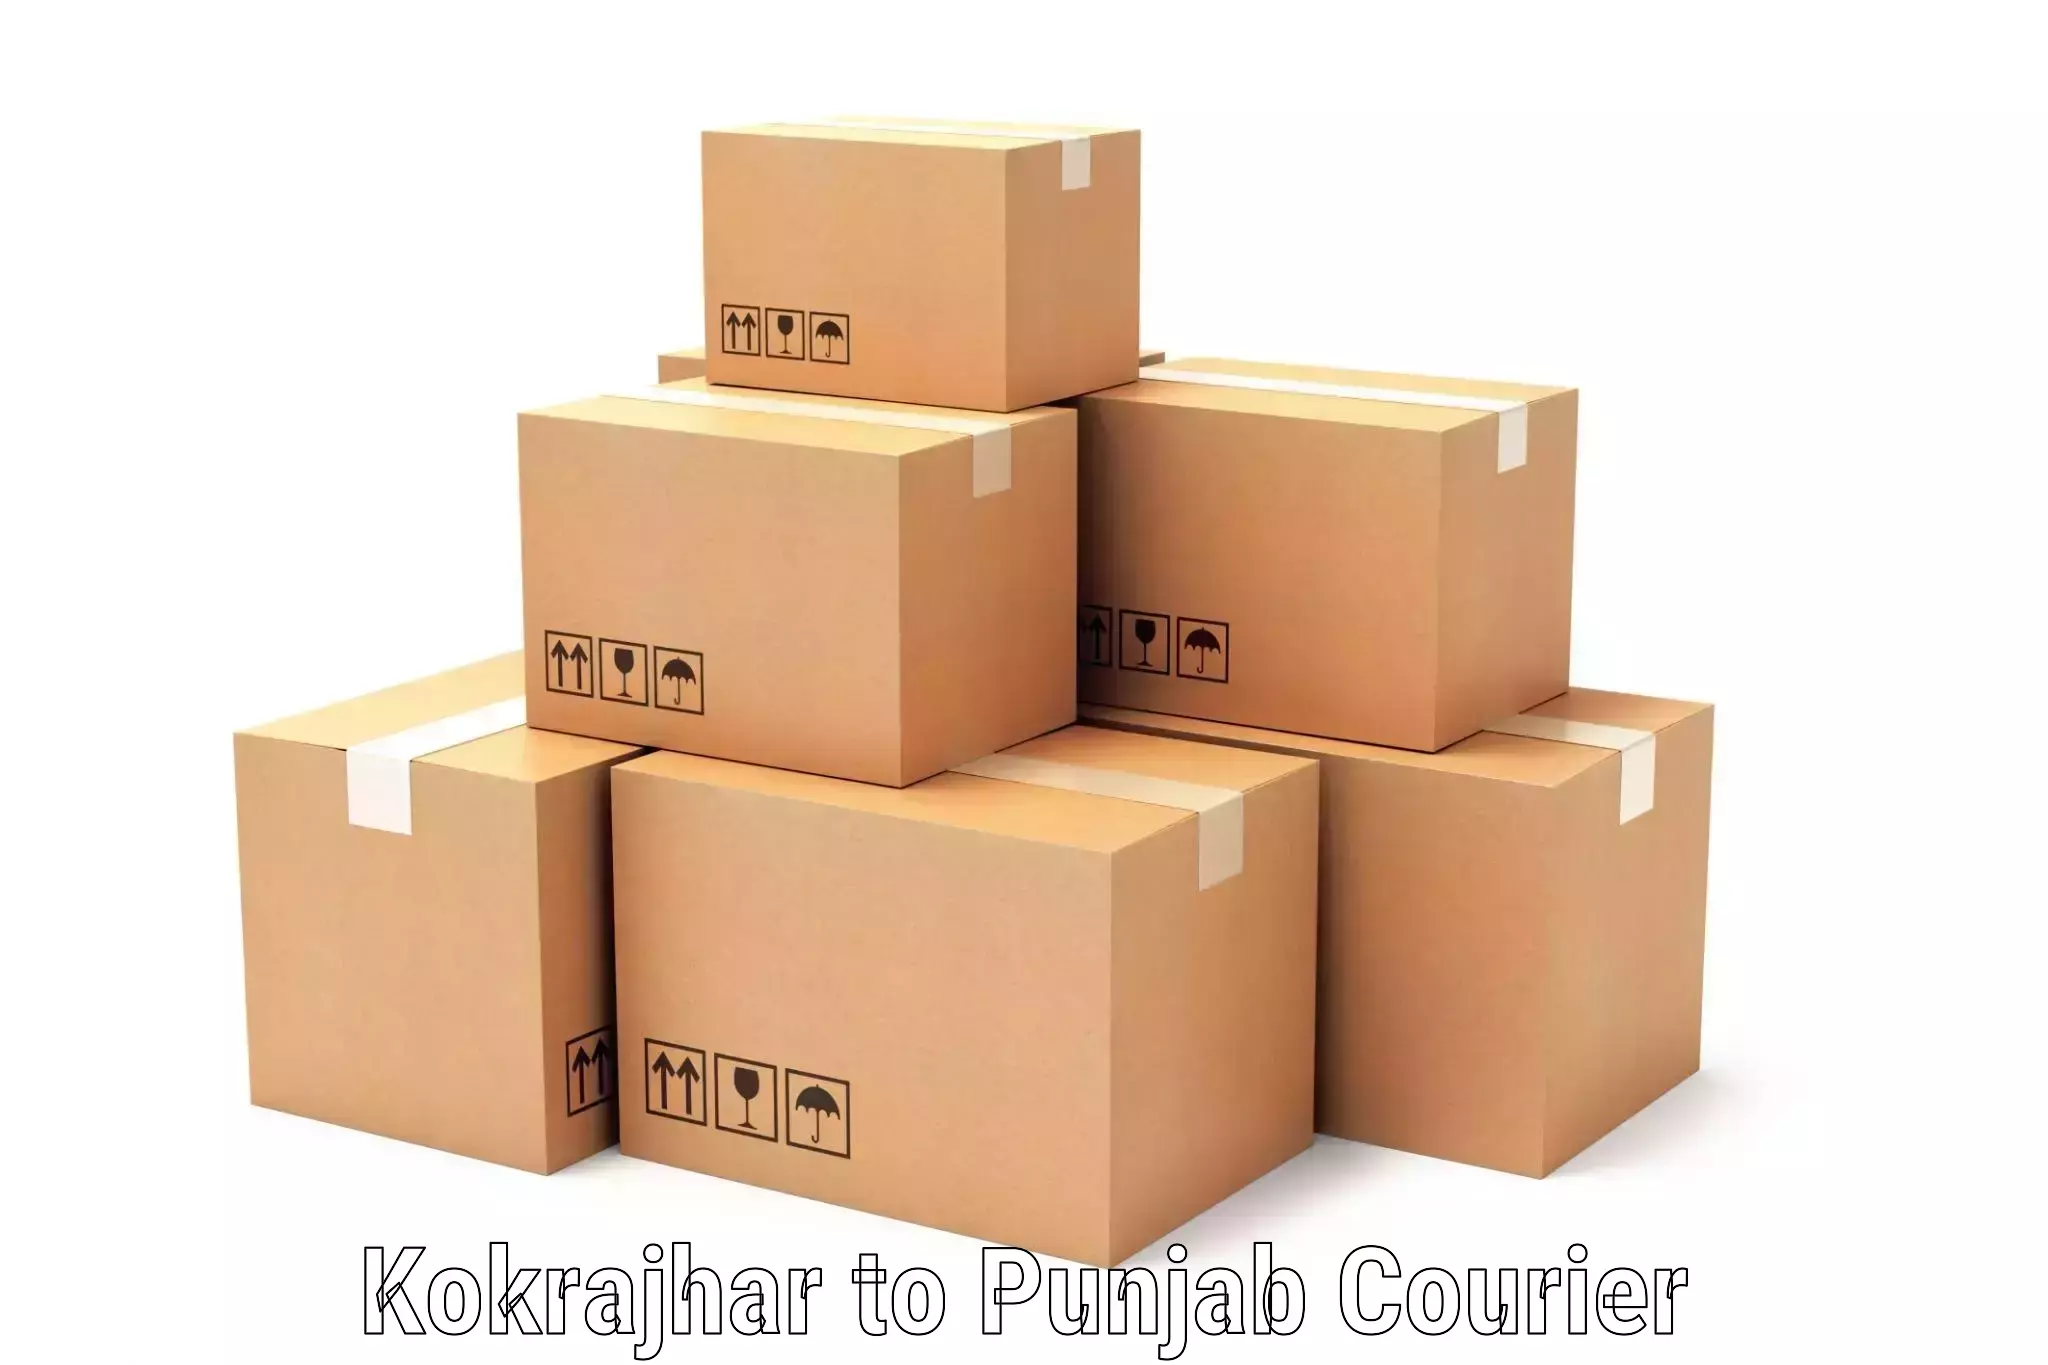 Customer-centric shipping Kokrajhar to Abohar